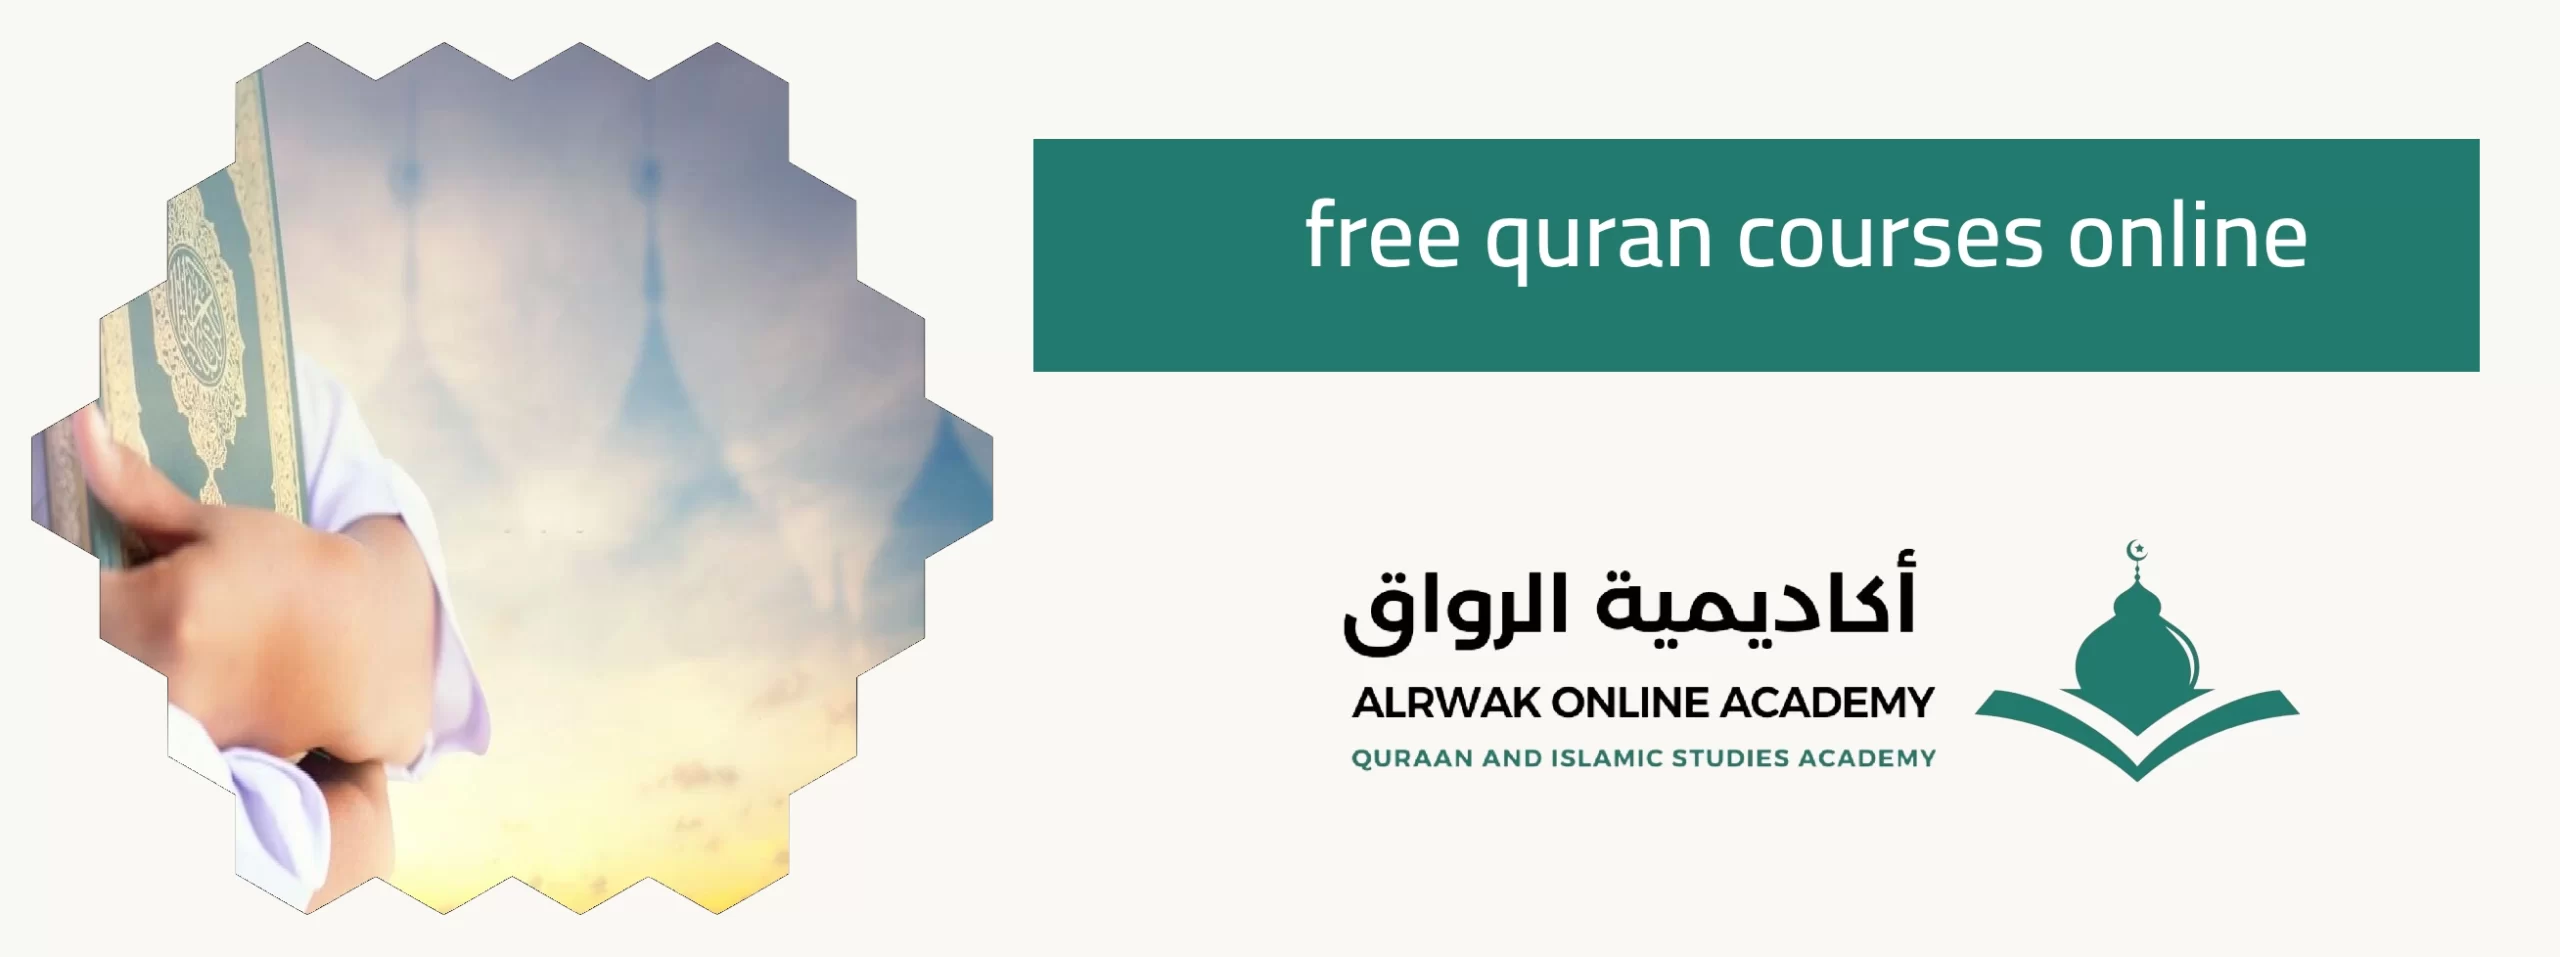 free quran courses